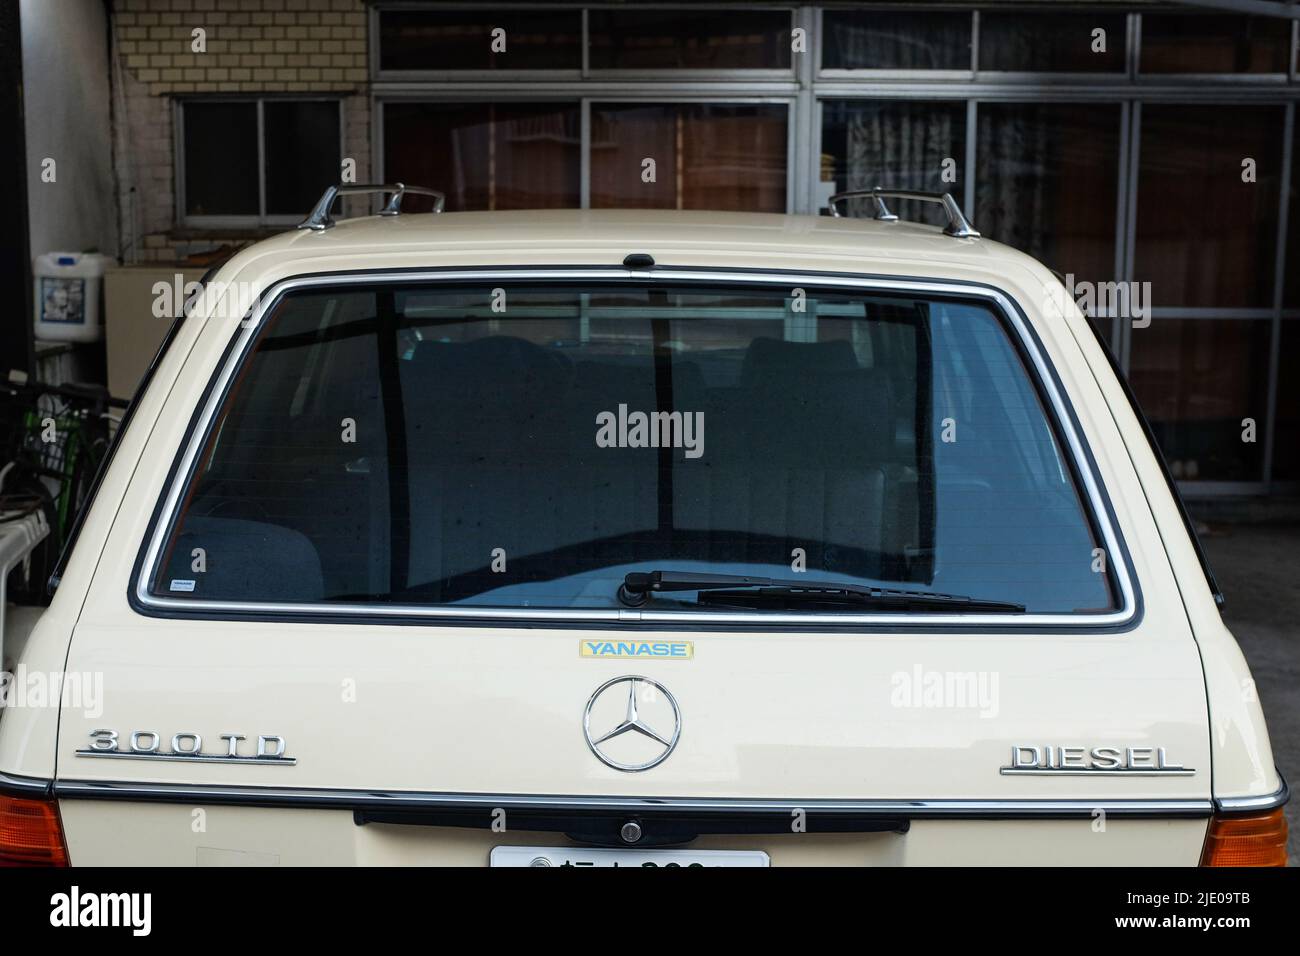 Ein Diesel-Mercedes-Auto in Japan, das den Weltdiesel auf dem Rücken enthält. Stockfoto